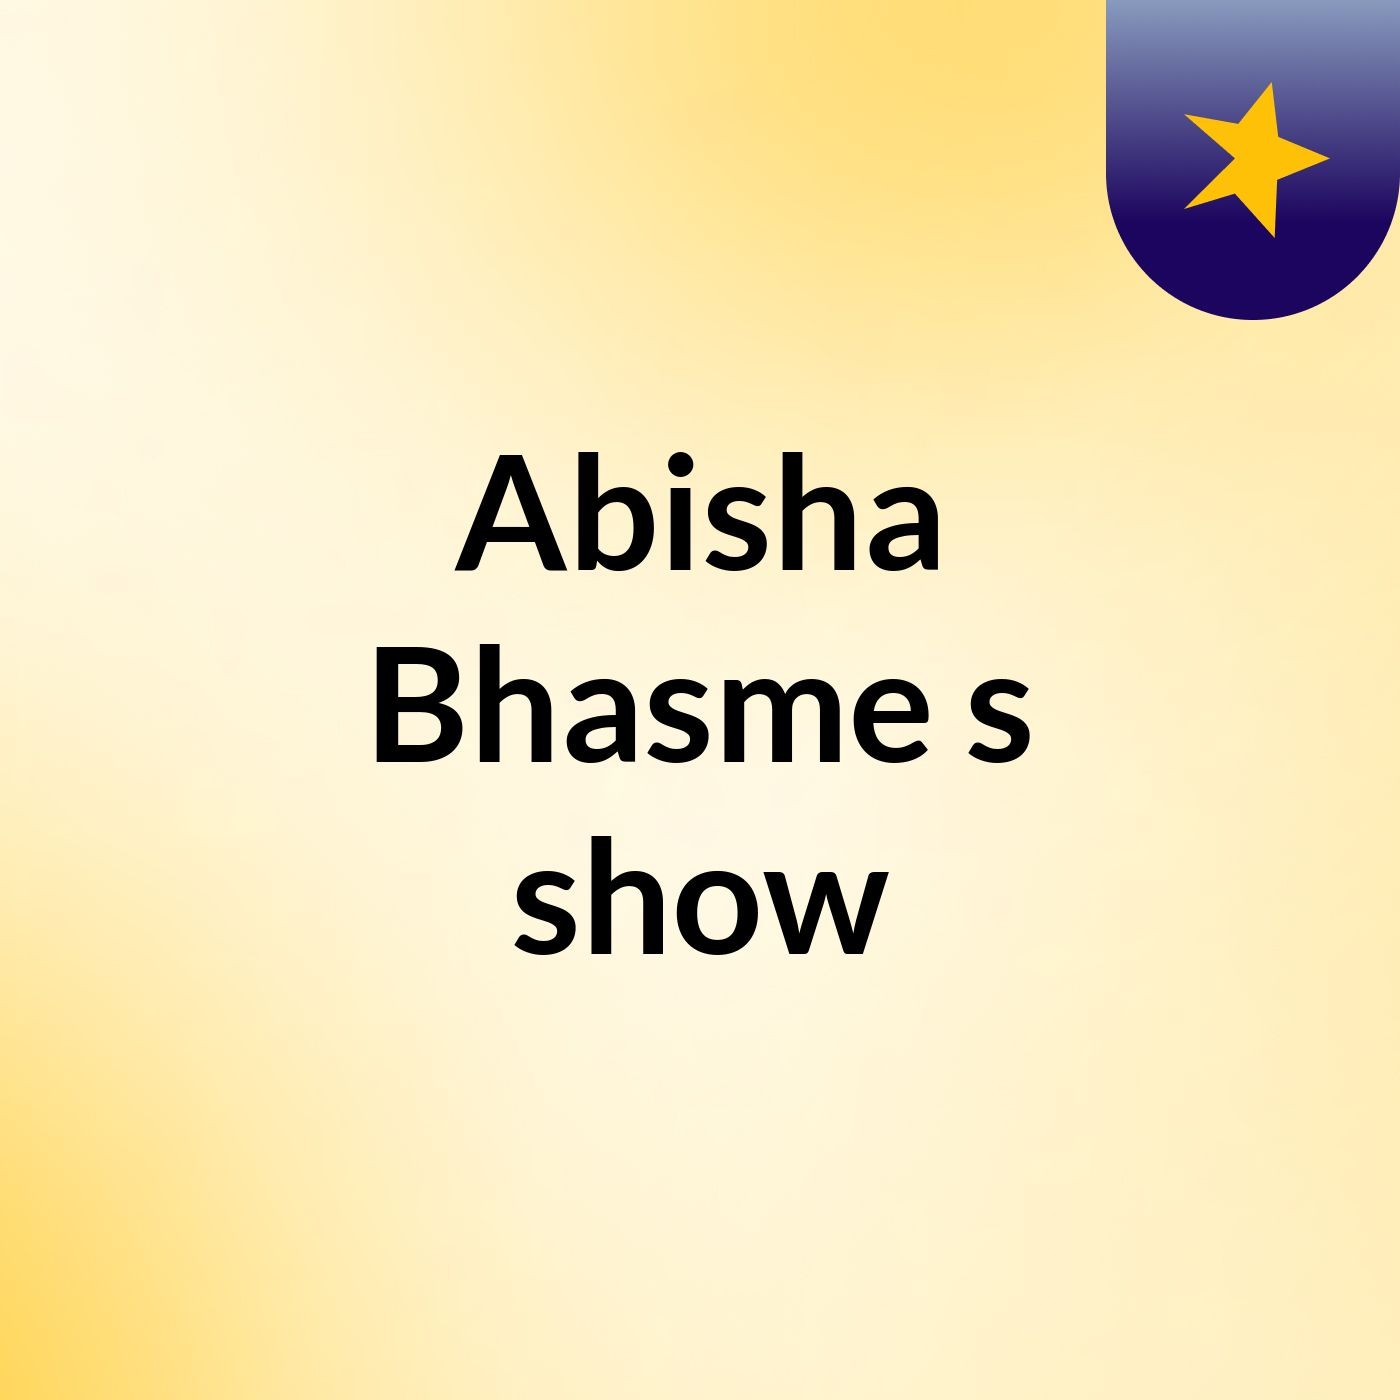 Abisha Bhasme's show